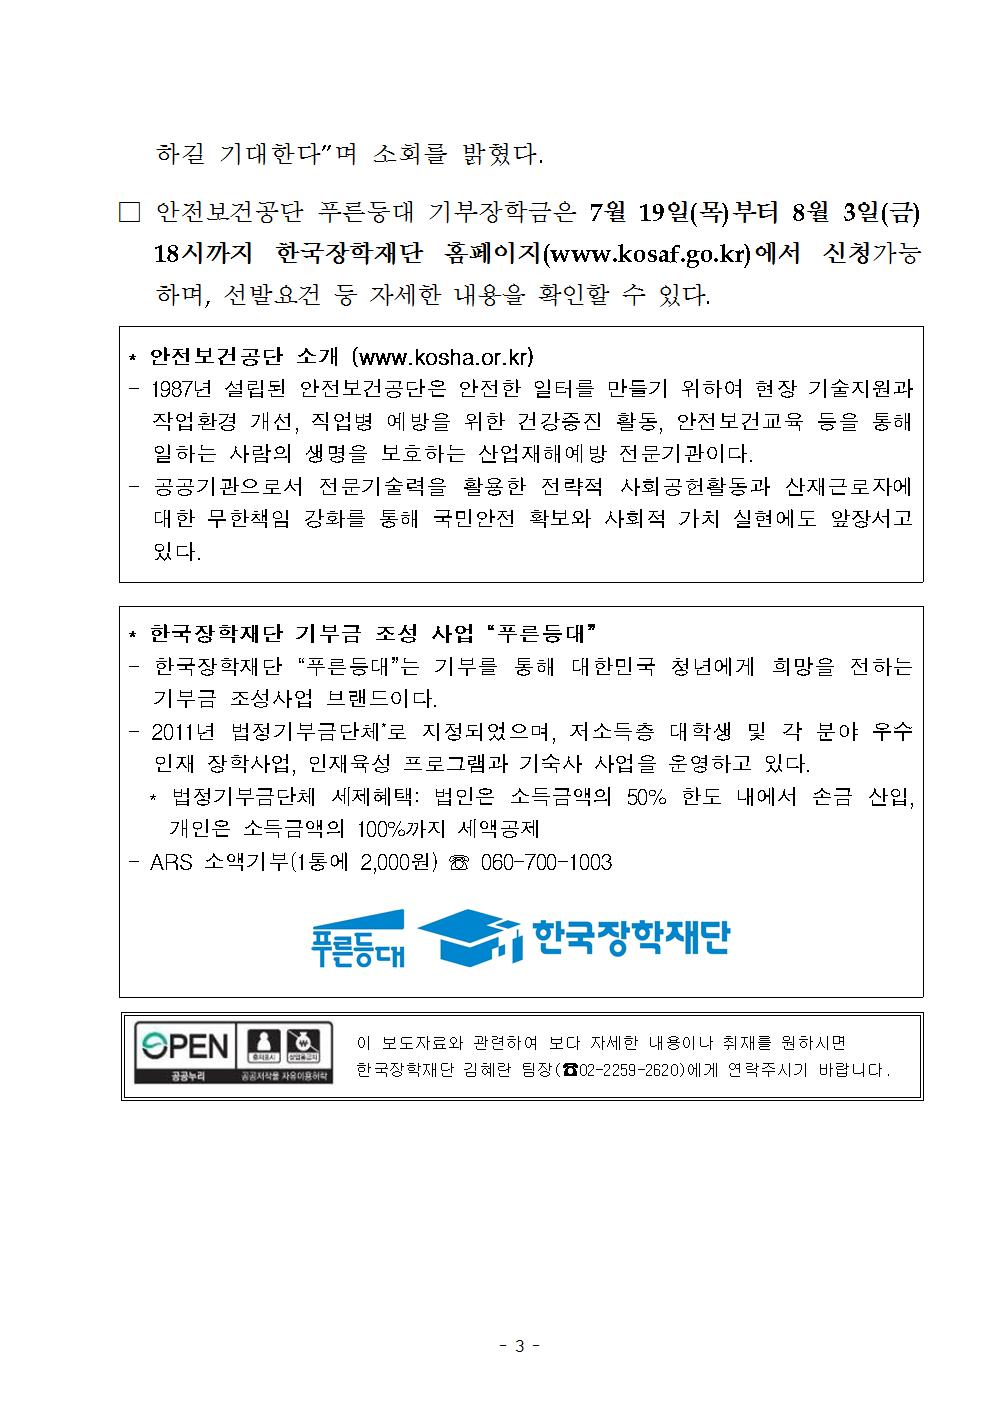 07-30(월)[보도자료] 한국장학재단, 안전보건공단과 푸른등대 기부장학금 기탁식 개최003.jpg